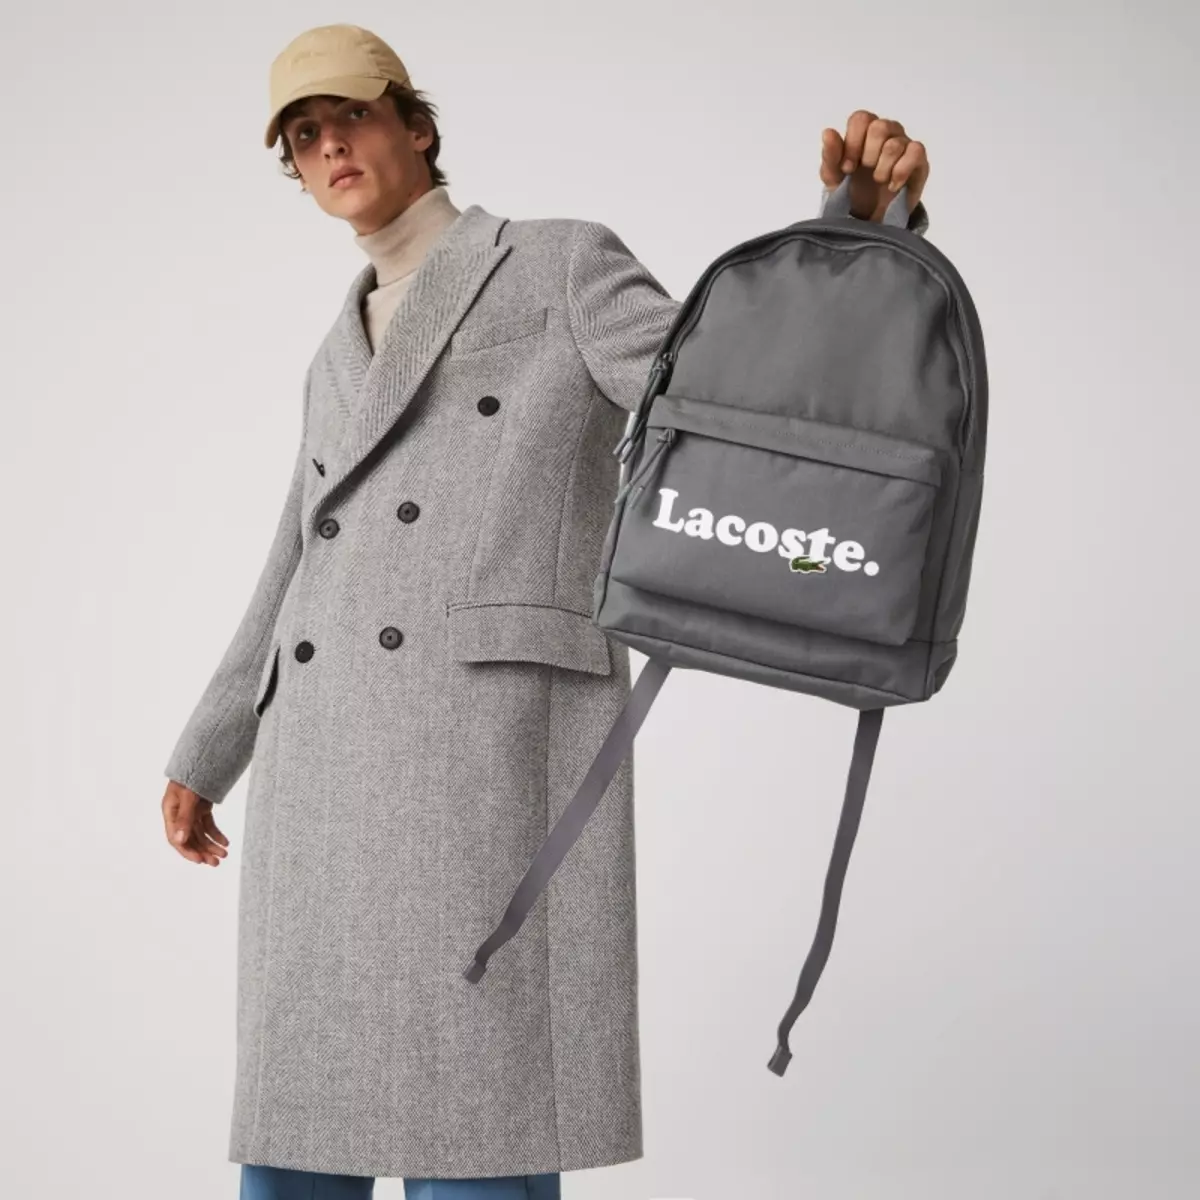 Lacoste backpacks: Frouljus en manlju, swart en blau-griene, learfakken bags, oaren 15408_10